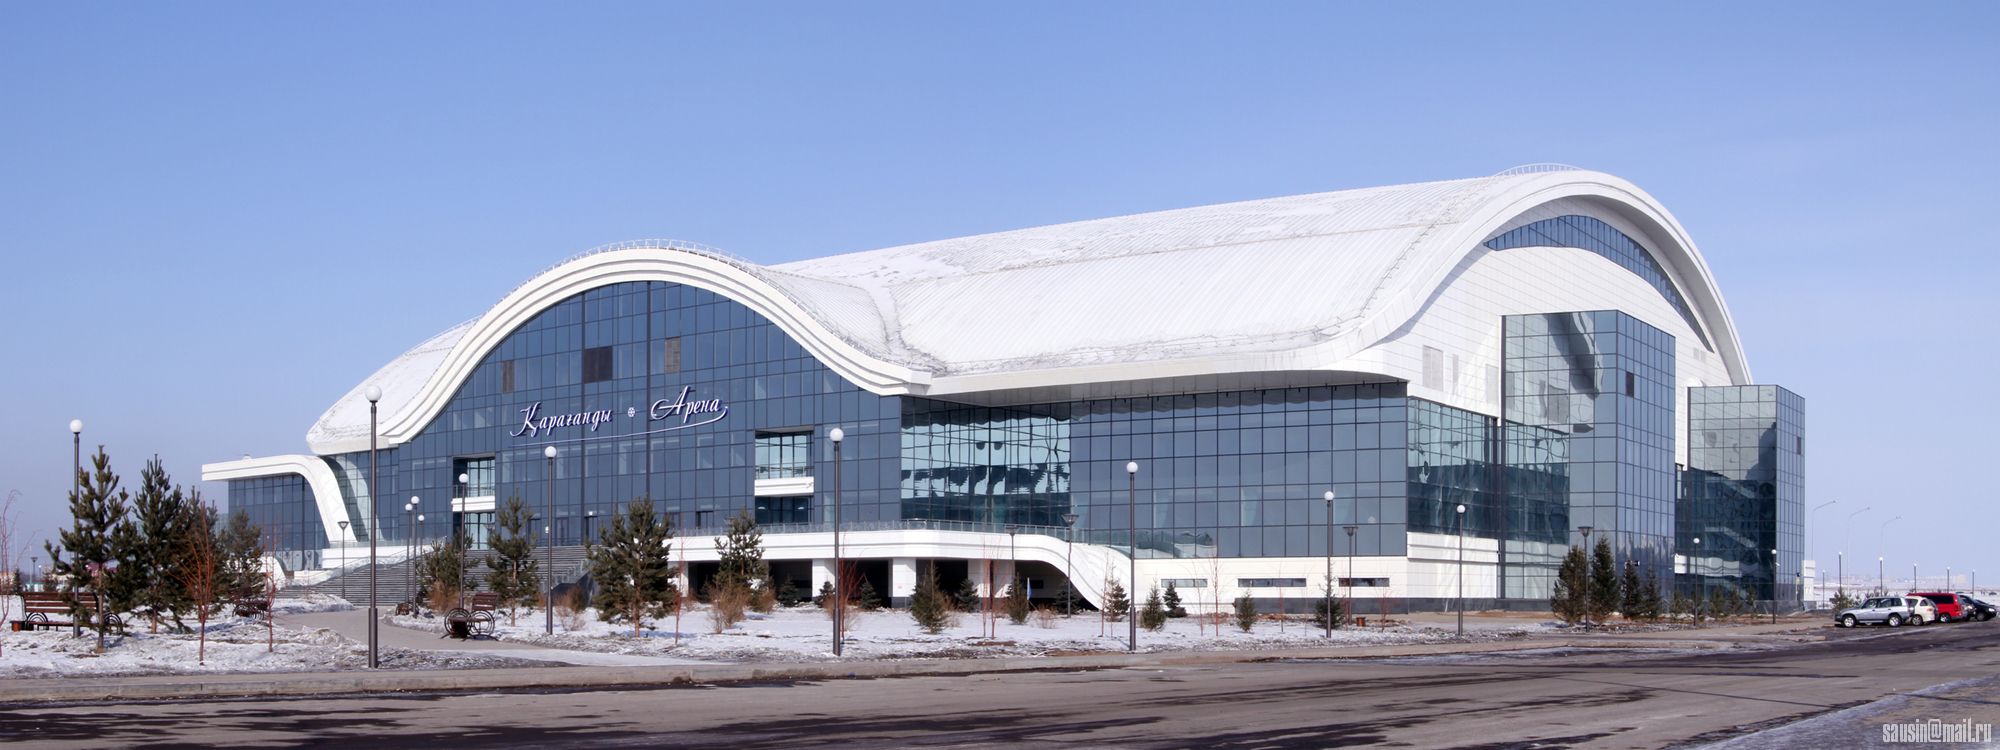 Ledovyy-dvorets-Karagandy-Arena.jpg